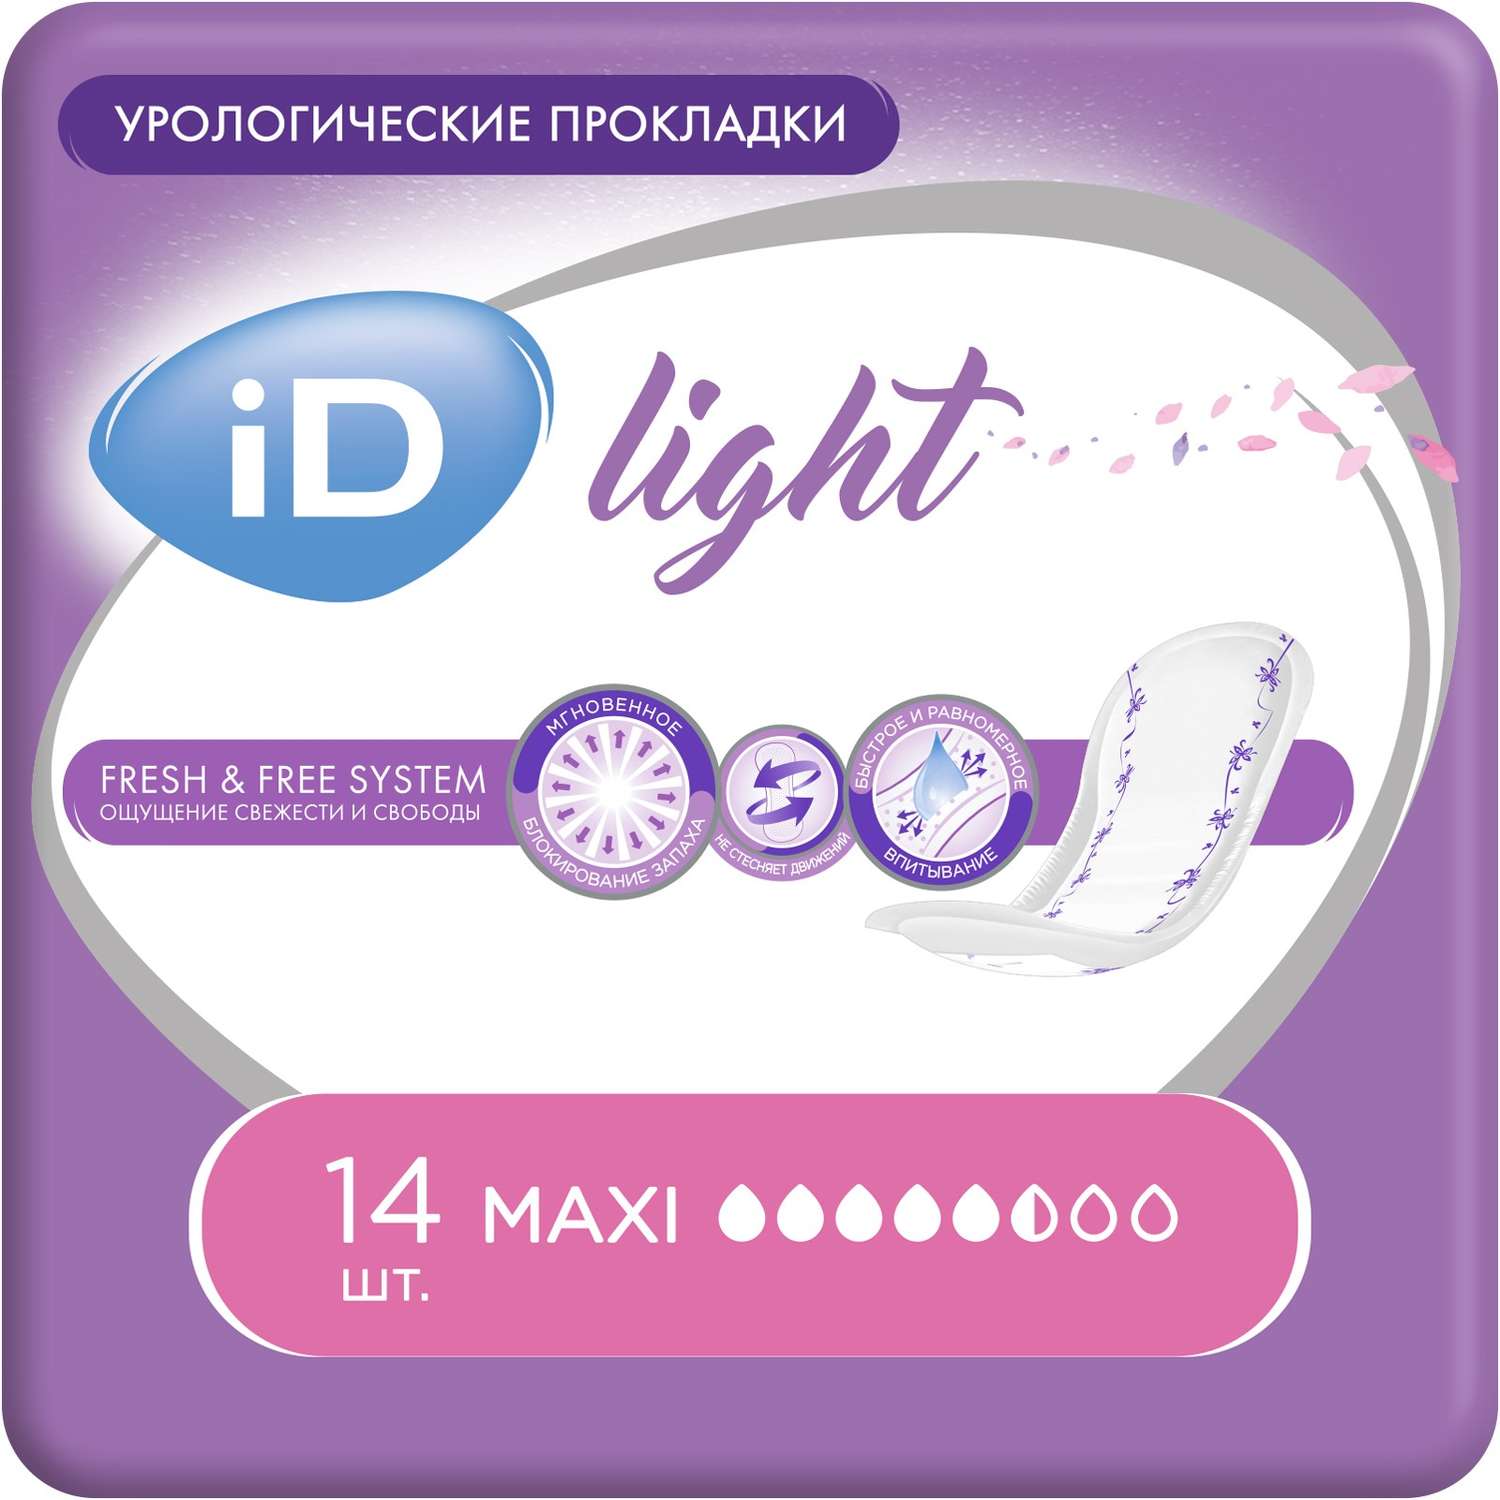 Прокладки урологические iD LIGHT Maxi 14 шт. - фото 1